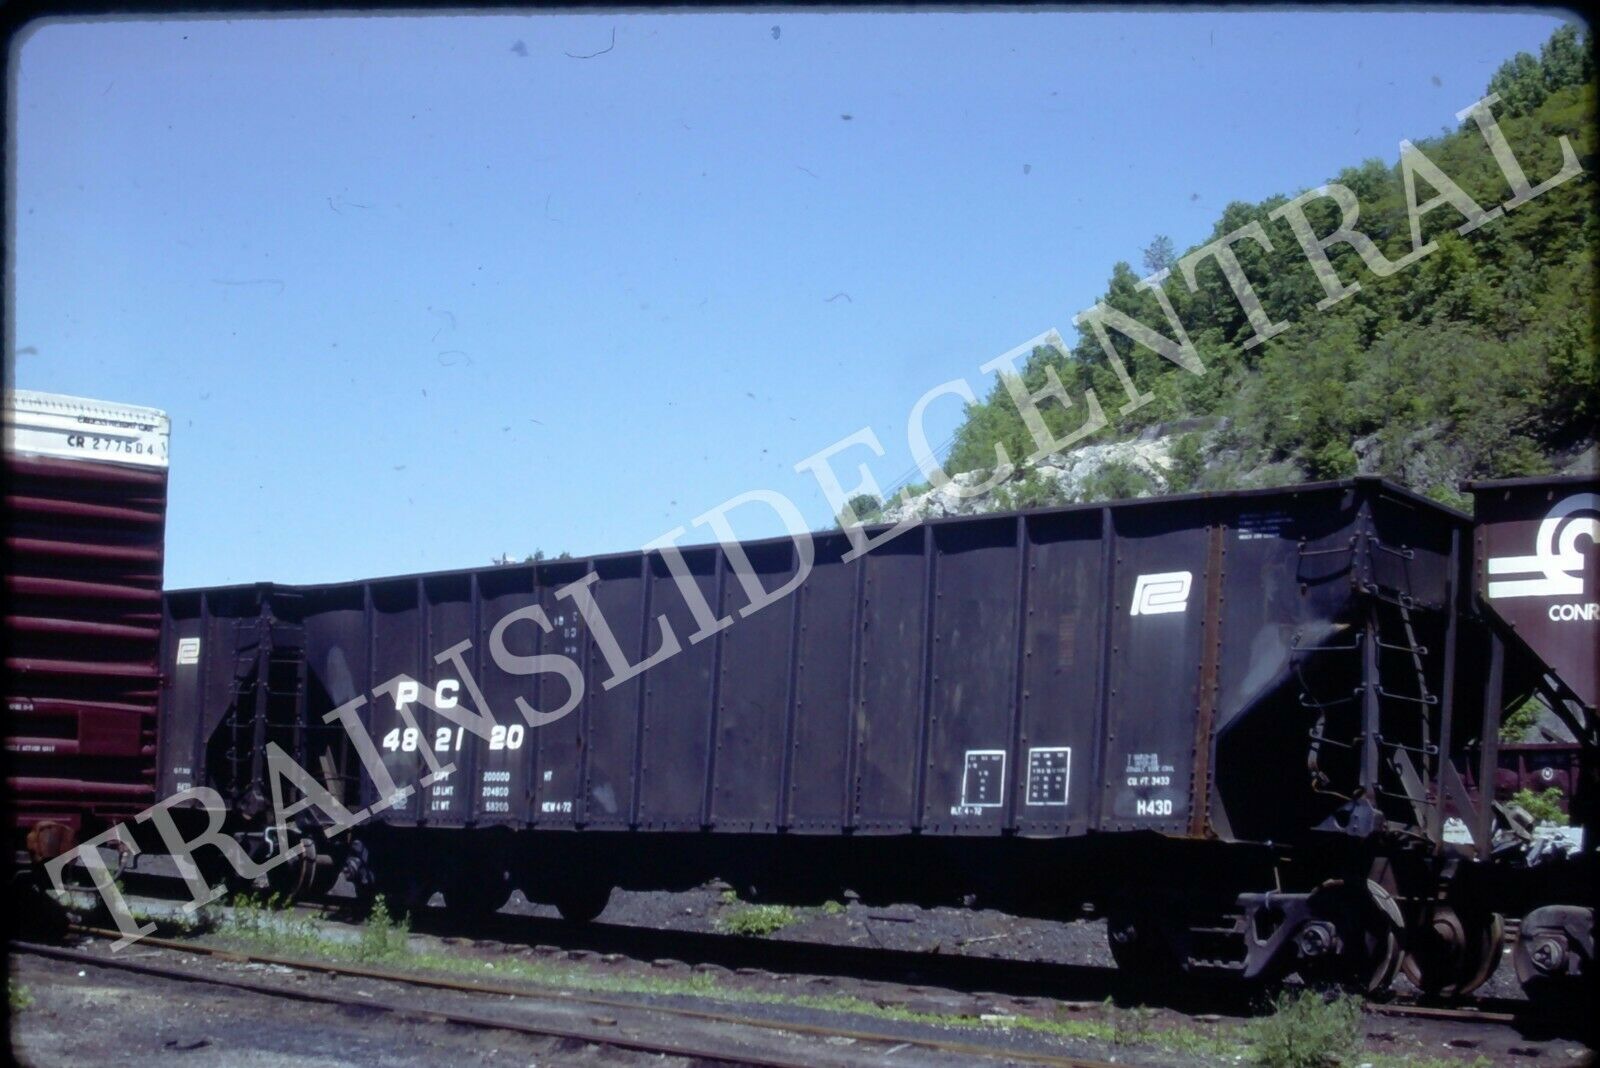 Original train slide PC PENN CENTRAL hopper 482120, 1984